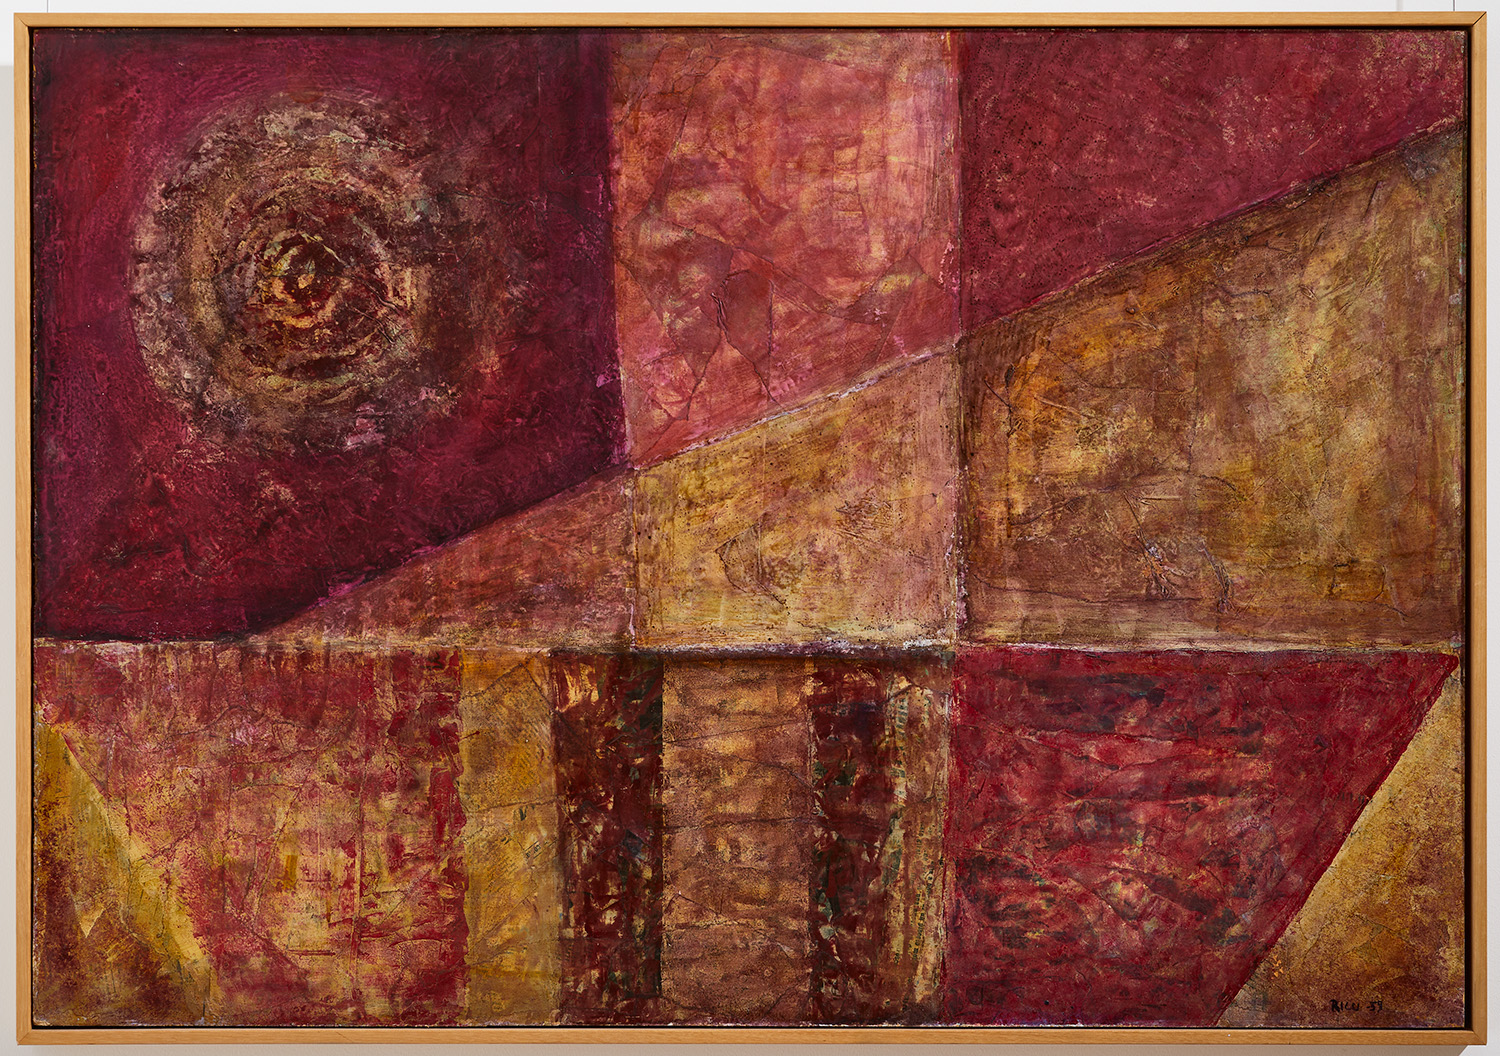 Astrazione Rossa N.1023 di Nino Ricci - Musei Macerata